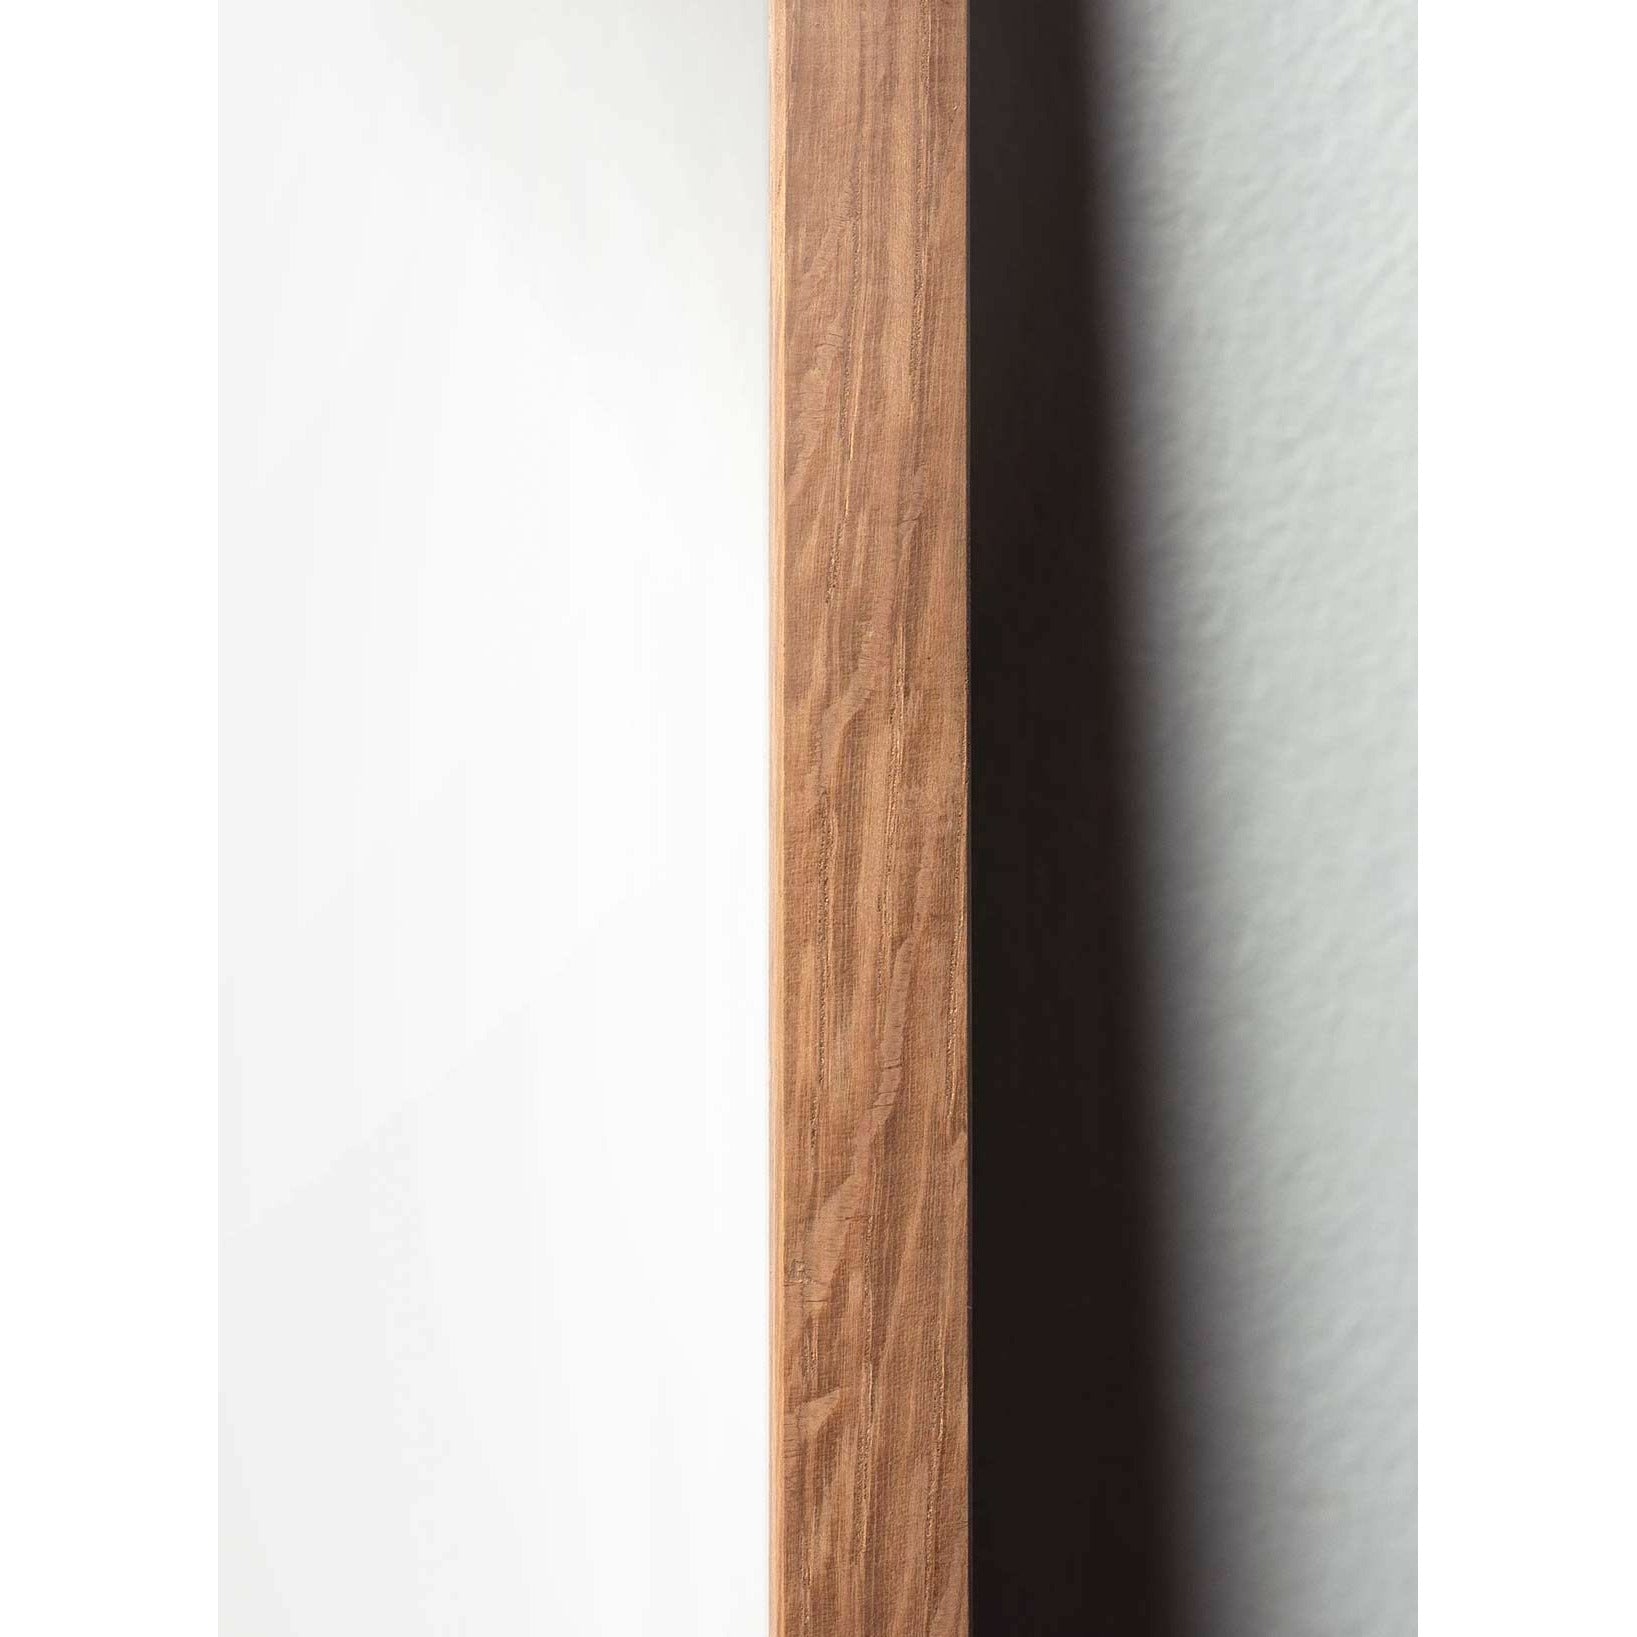 Brainchild Affiche de la ligne de fourmi, cadre en bois clair 70x100 cm, fond blanc